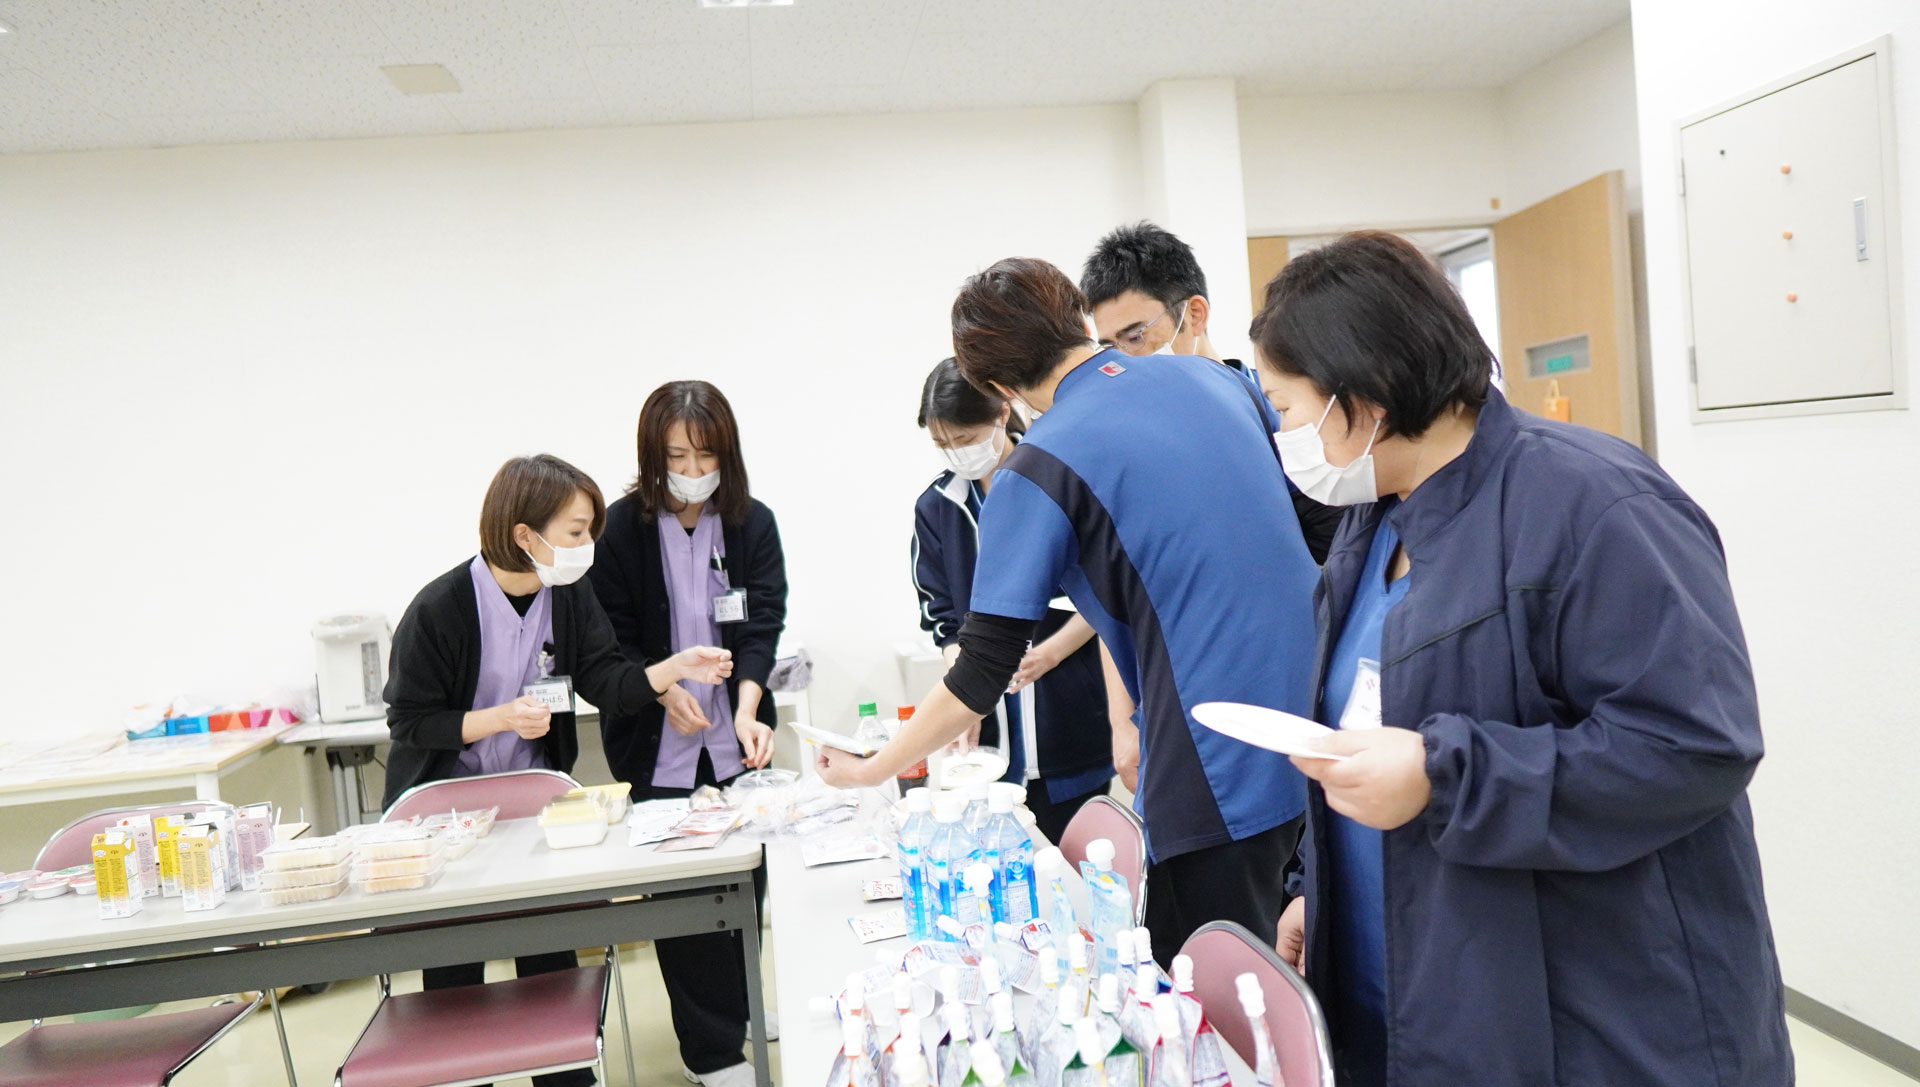 嚥下調整食試食会が開催されました│東広島市 下山記念クリニック 歯科衛生士 看護師さんたちも試食に参加